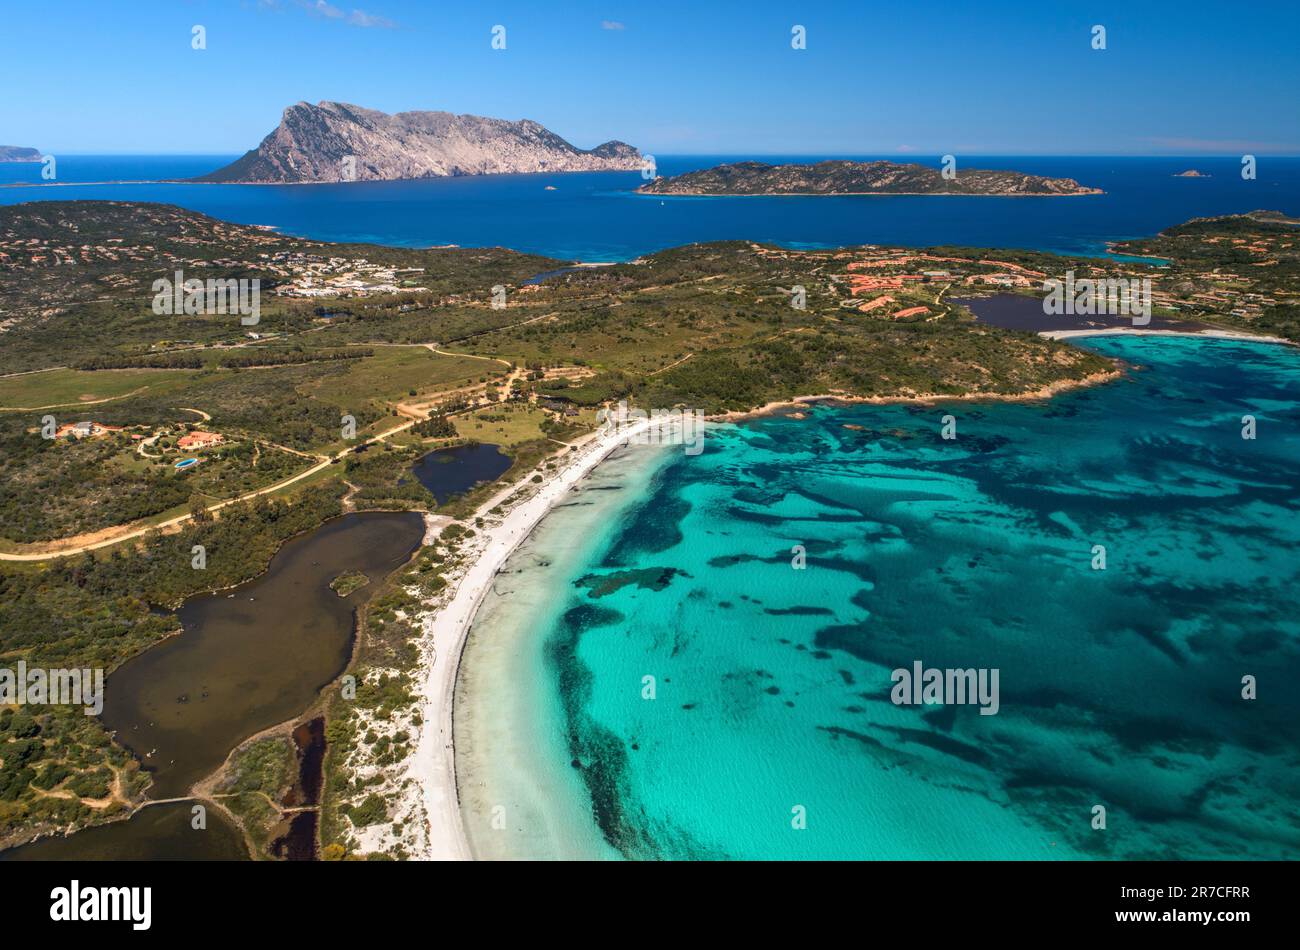 Sardinia Cala Brandinchi beautiful italian beach Mediterranean Sea, Azure sea, turquoise water, sandy beach Stock Photo